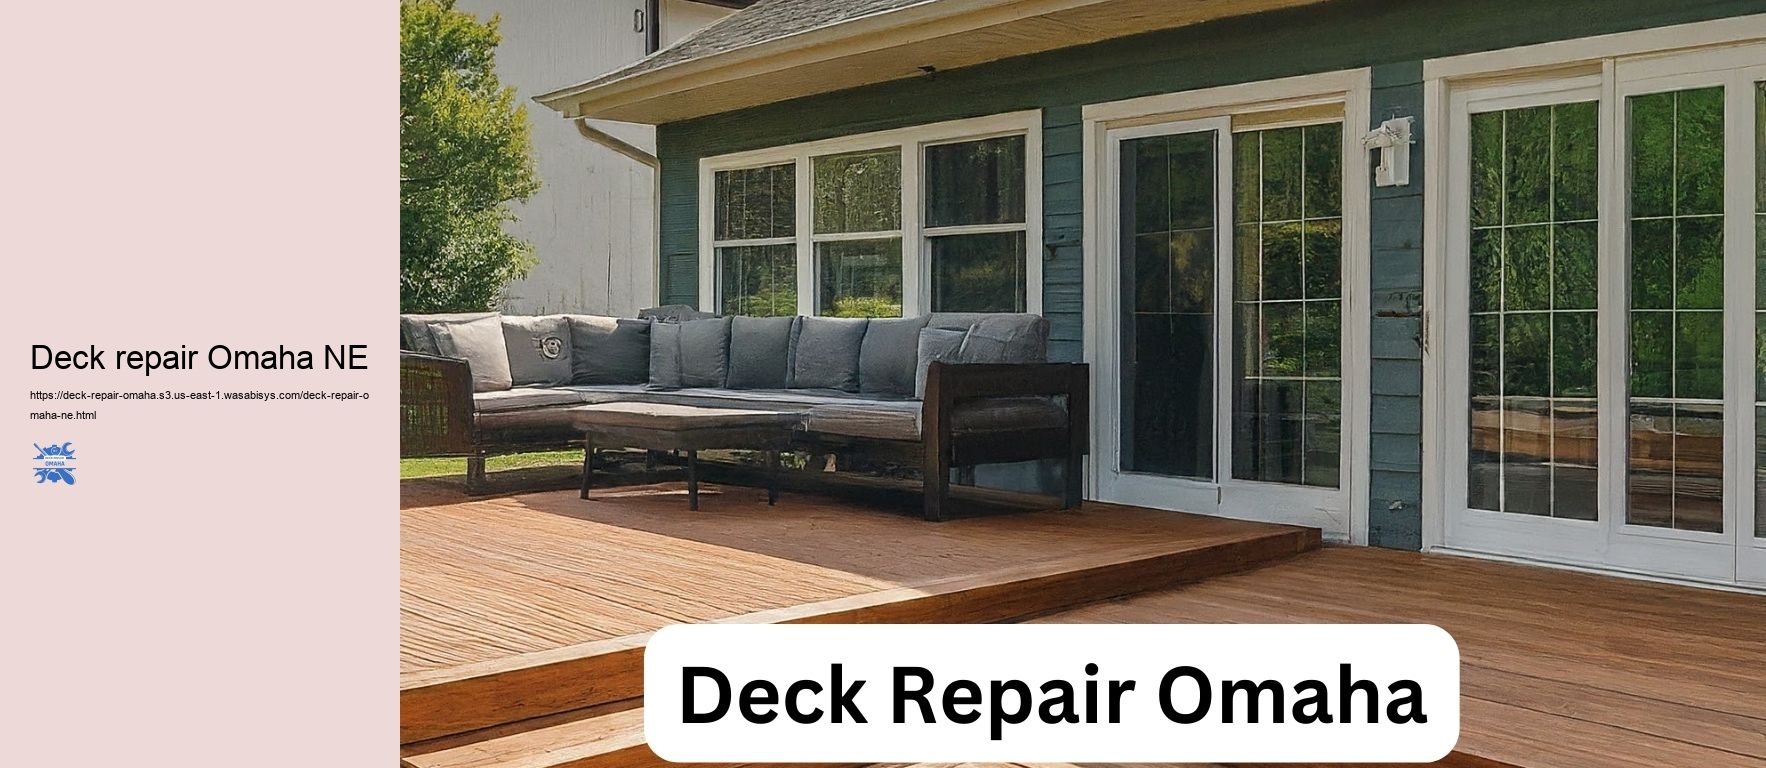 Deck repair Omaha NE